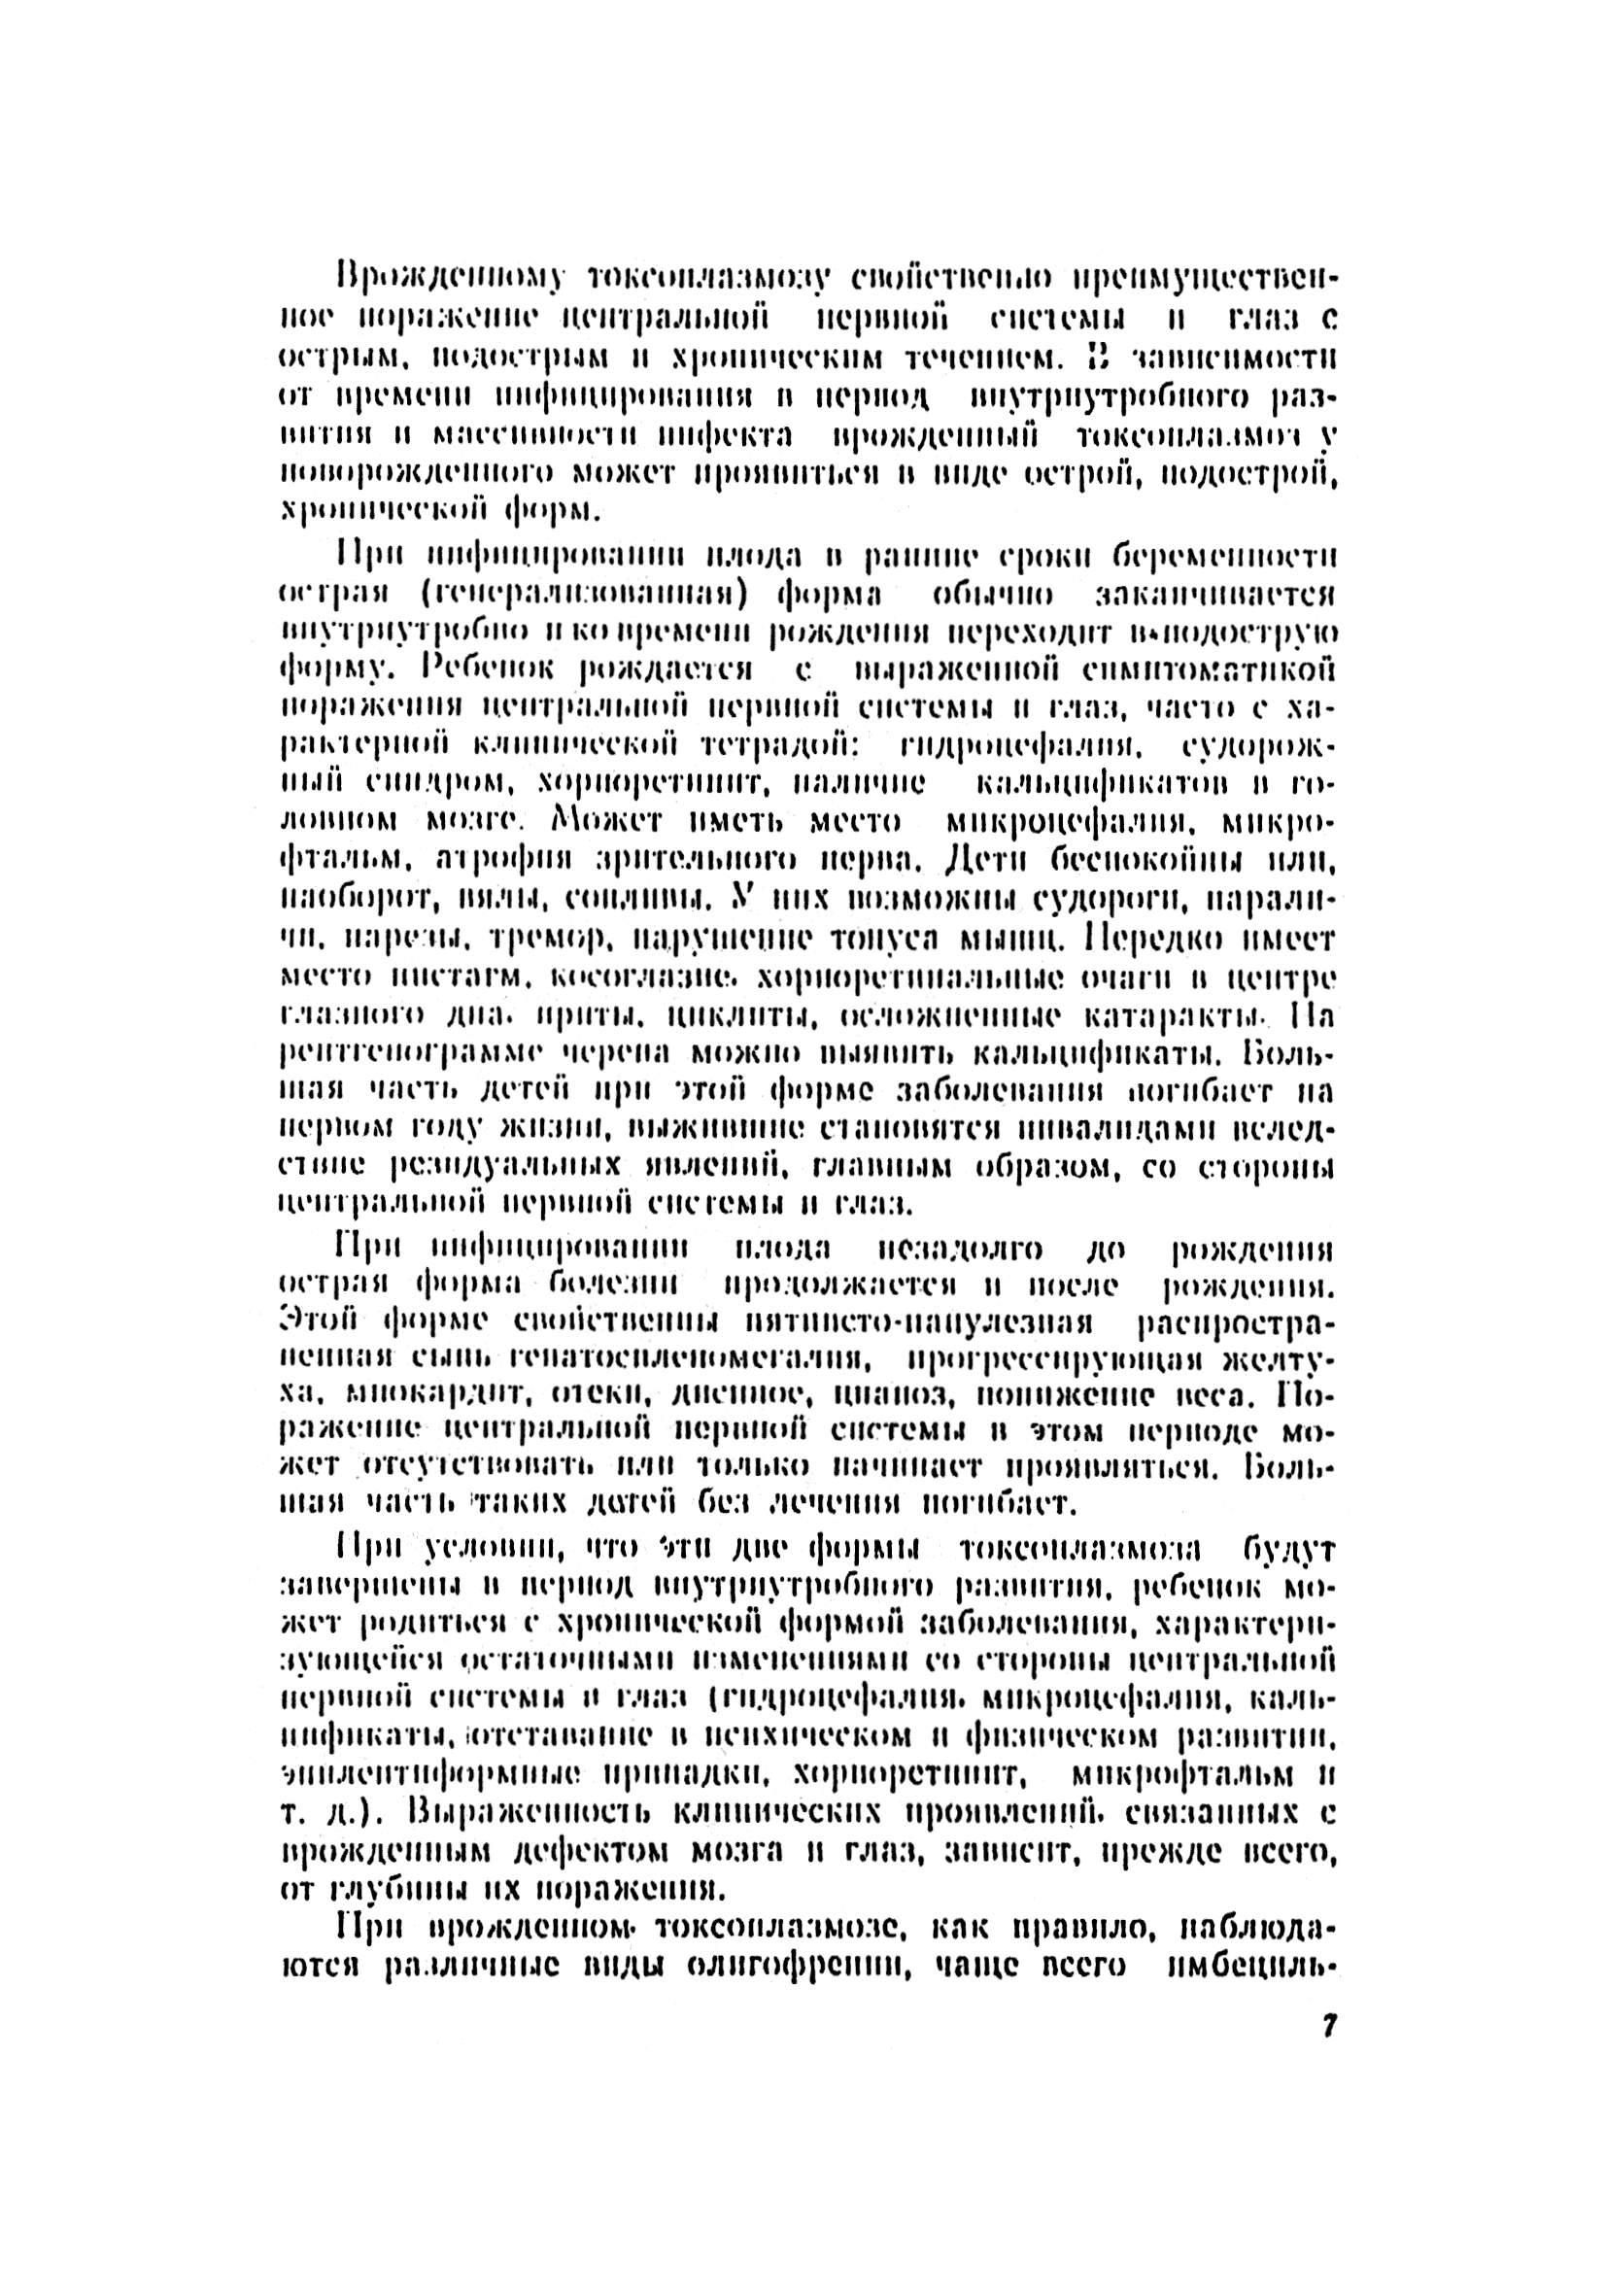 Методические рекомендации 10/11-31